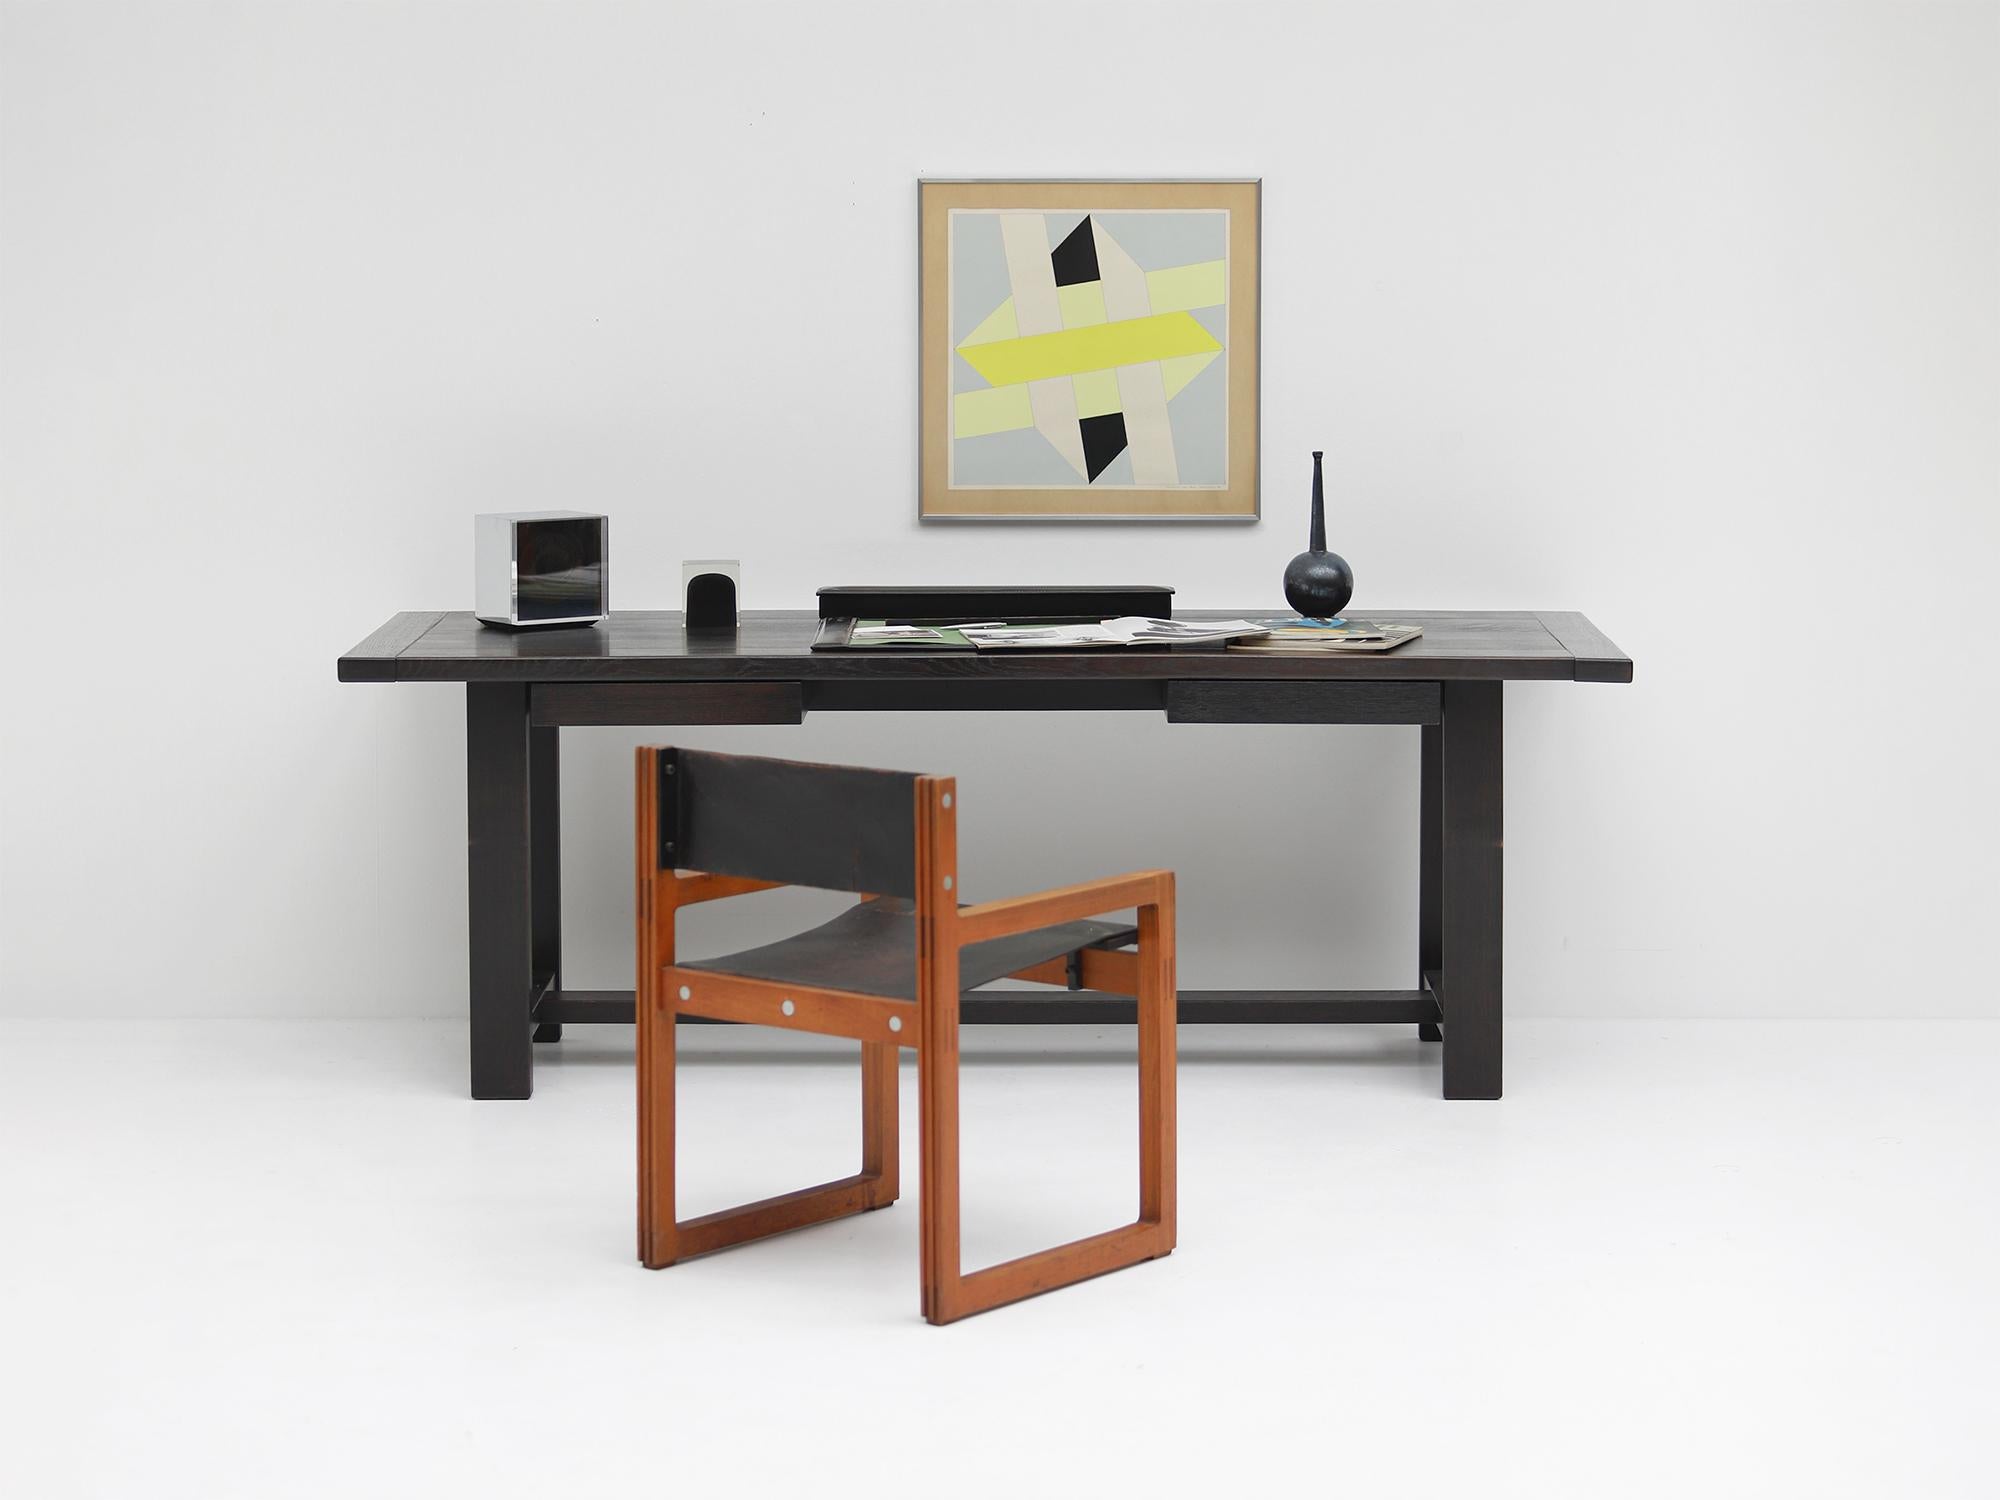 1969 Esstisch / Schreibtisch, hergestellt von Mi und entworfen von J. Batenburg. Mi ist wenig bekannt, aber jeder Fund ist ein Schatz. Ihre Möbel zeugen von Handwerkskunst und Qualität. Dieser Esstisch kann für verschiedene Zwecke verwendet werden.